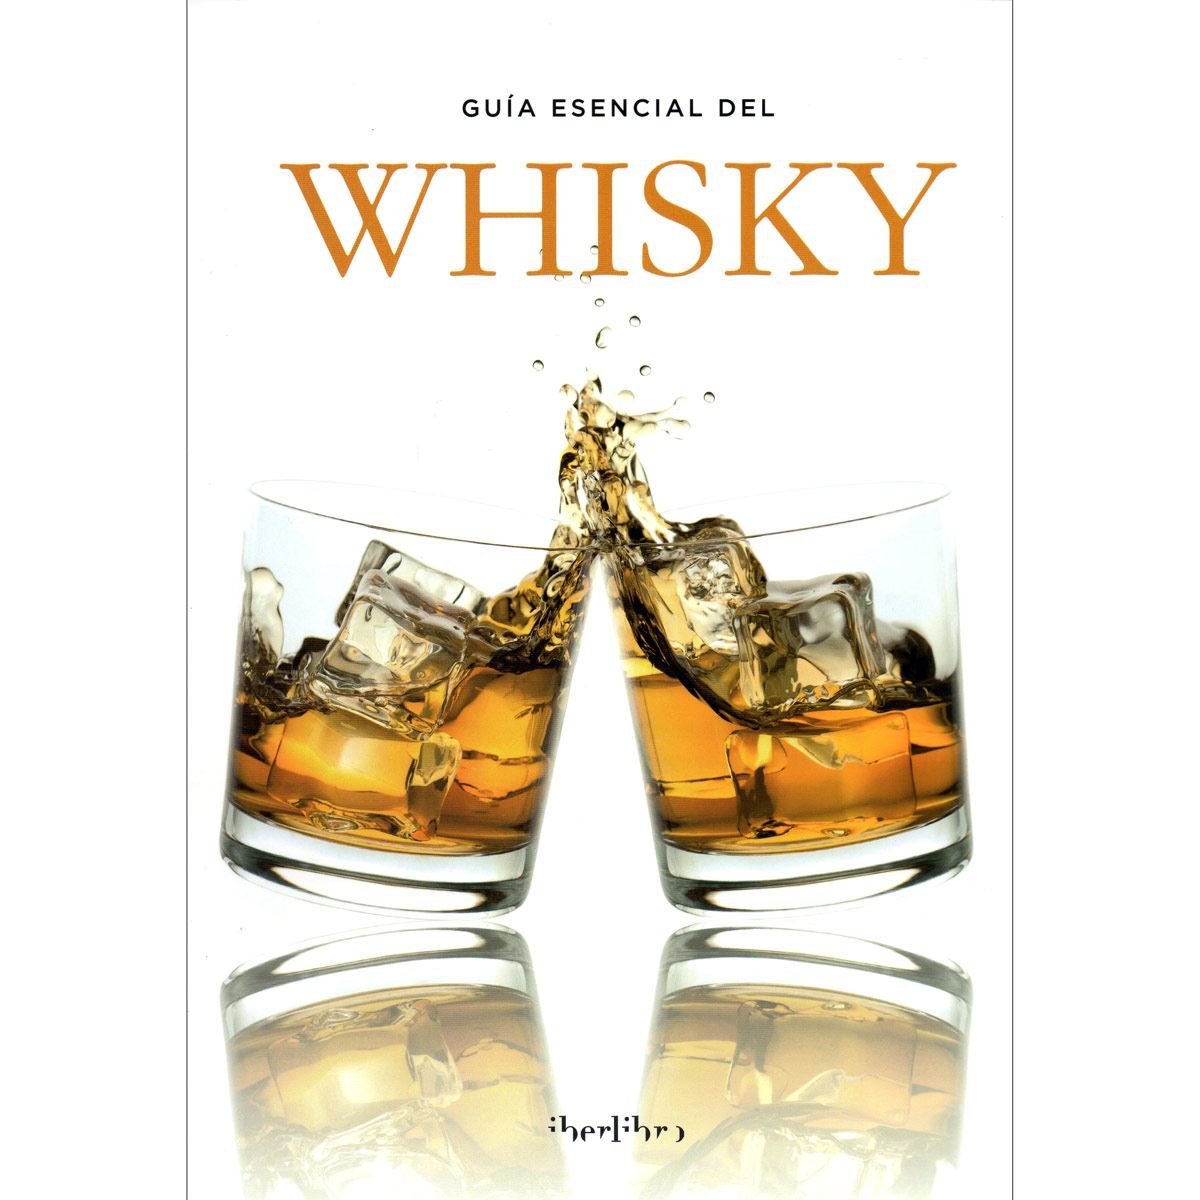 Guía esencial del whisky